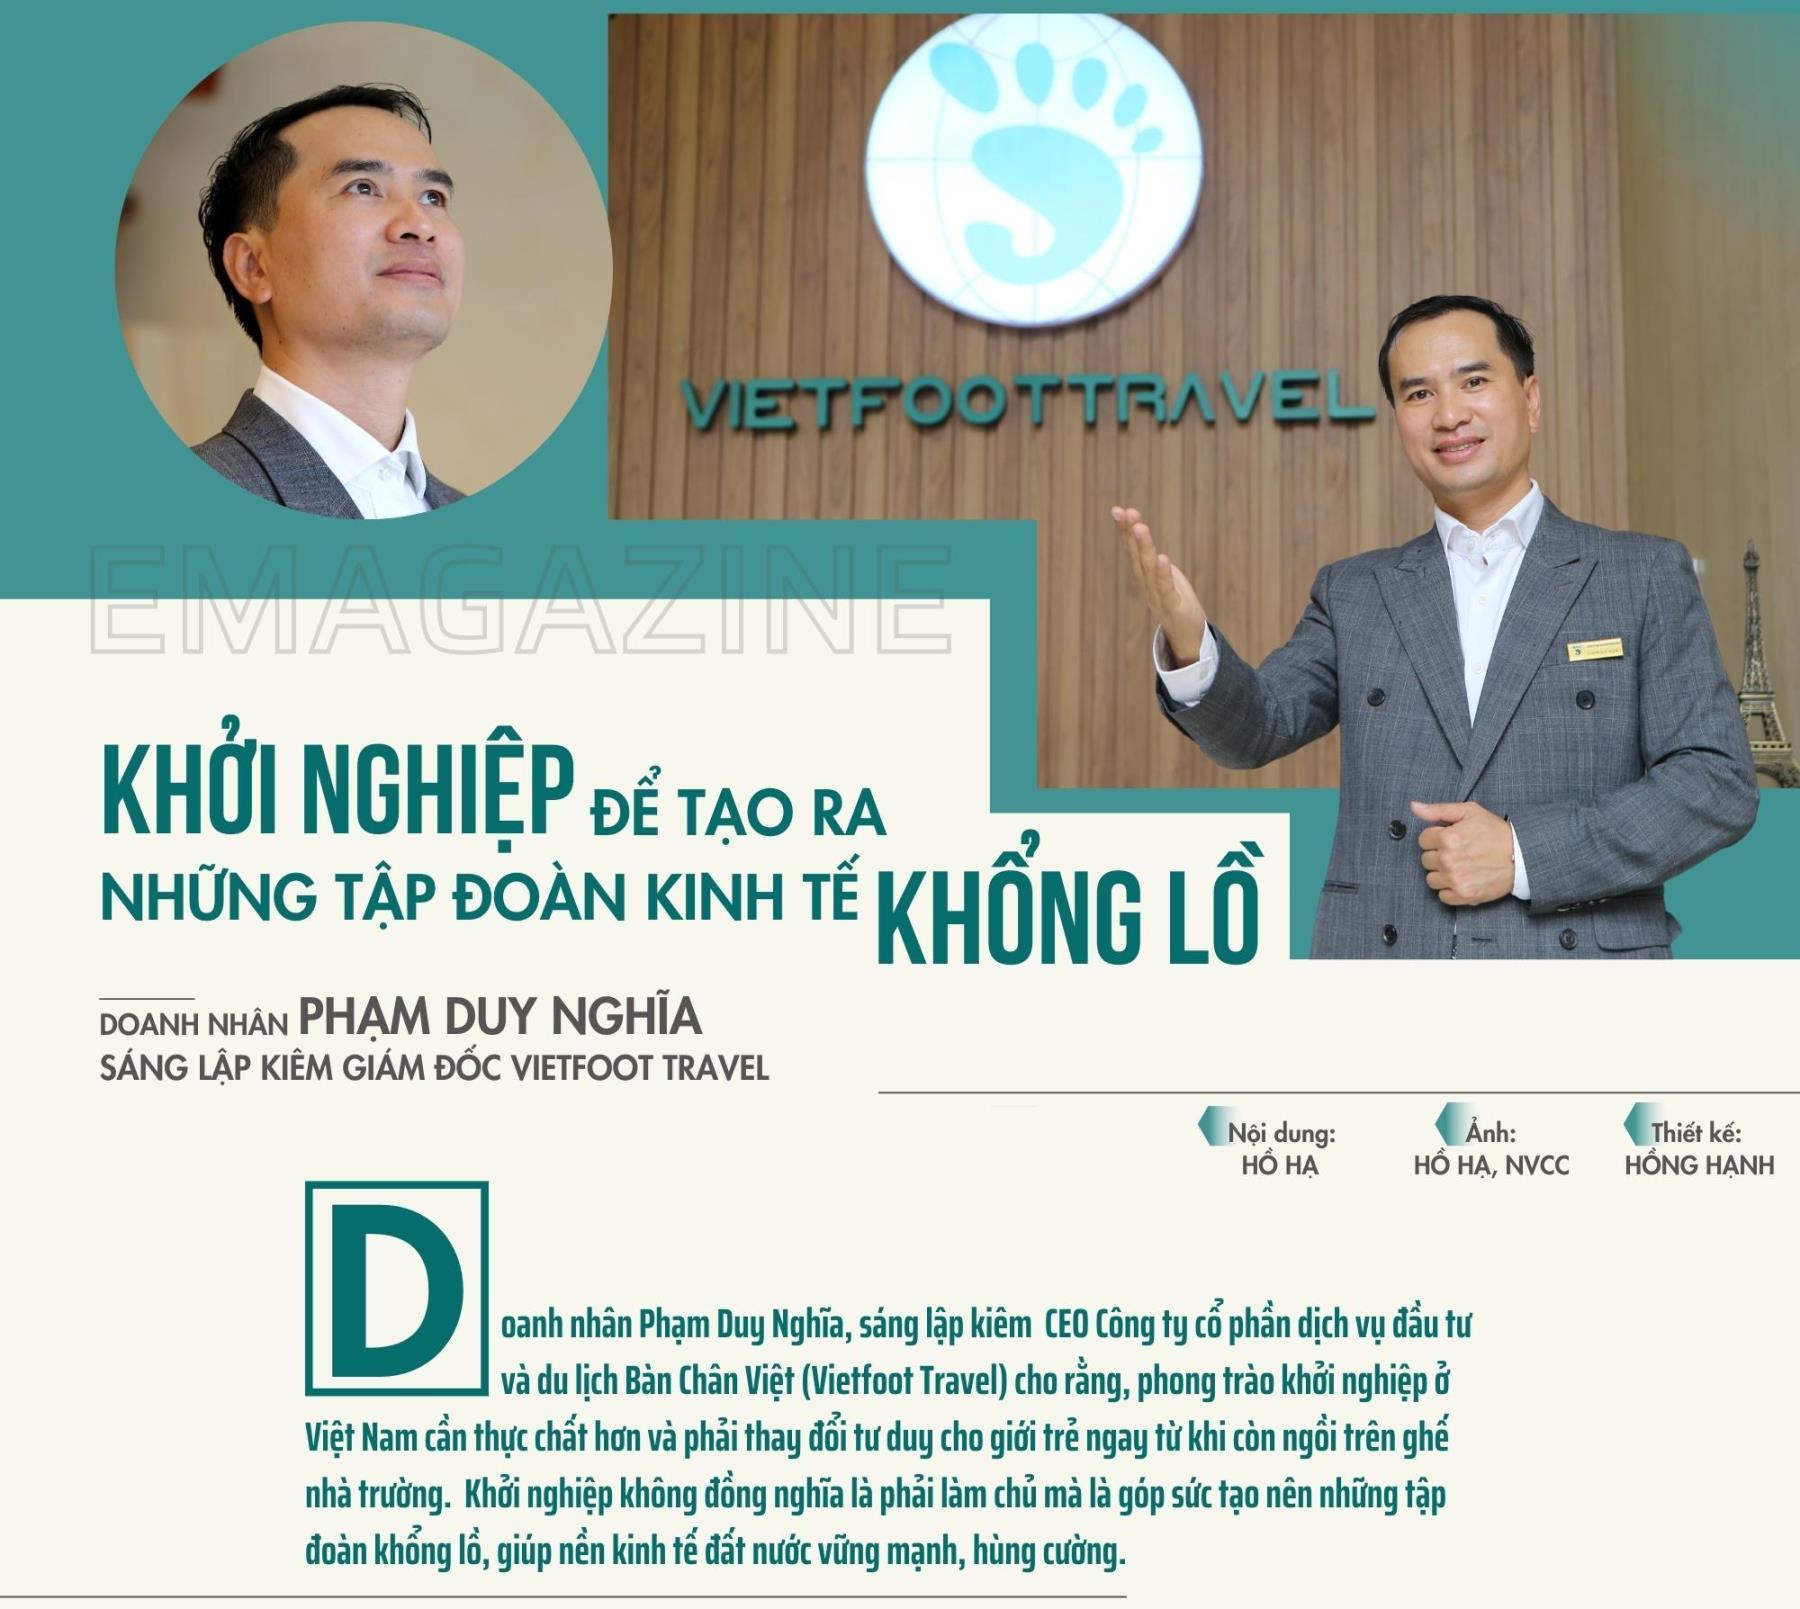 CEO Phạm Duy Nghĩa: Khởi nghiệp để góp sức tạo ra những tập đoàn kinh tế khổng lồ